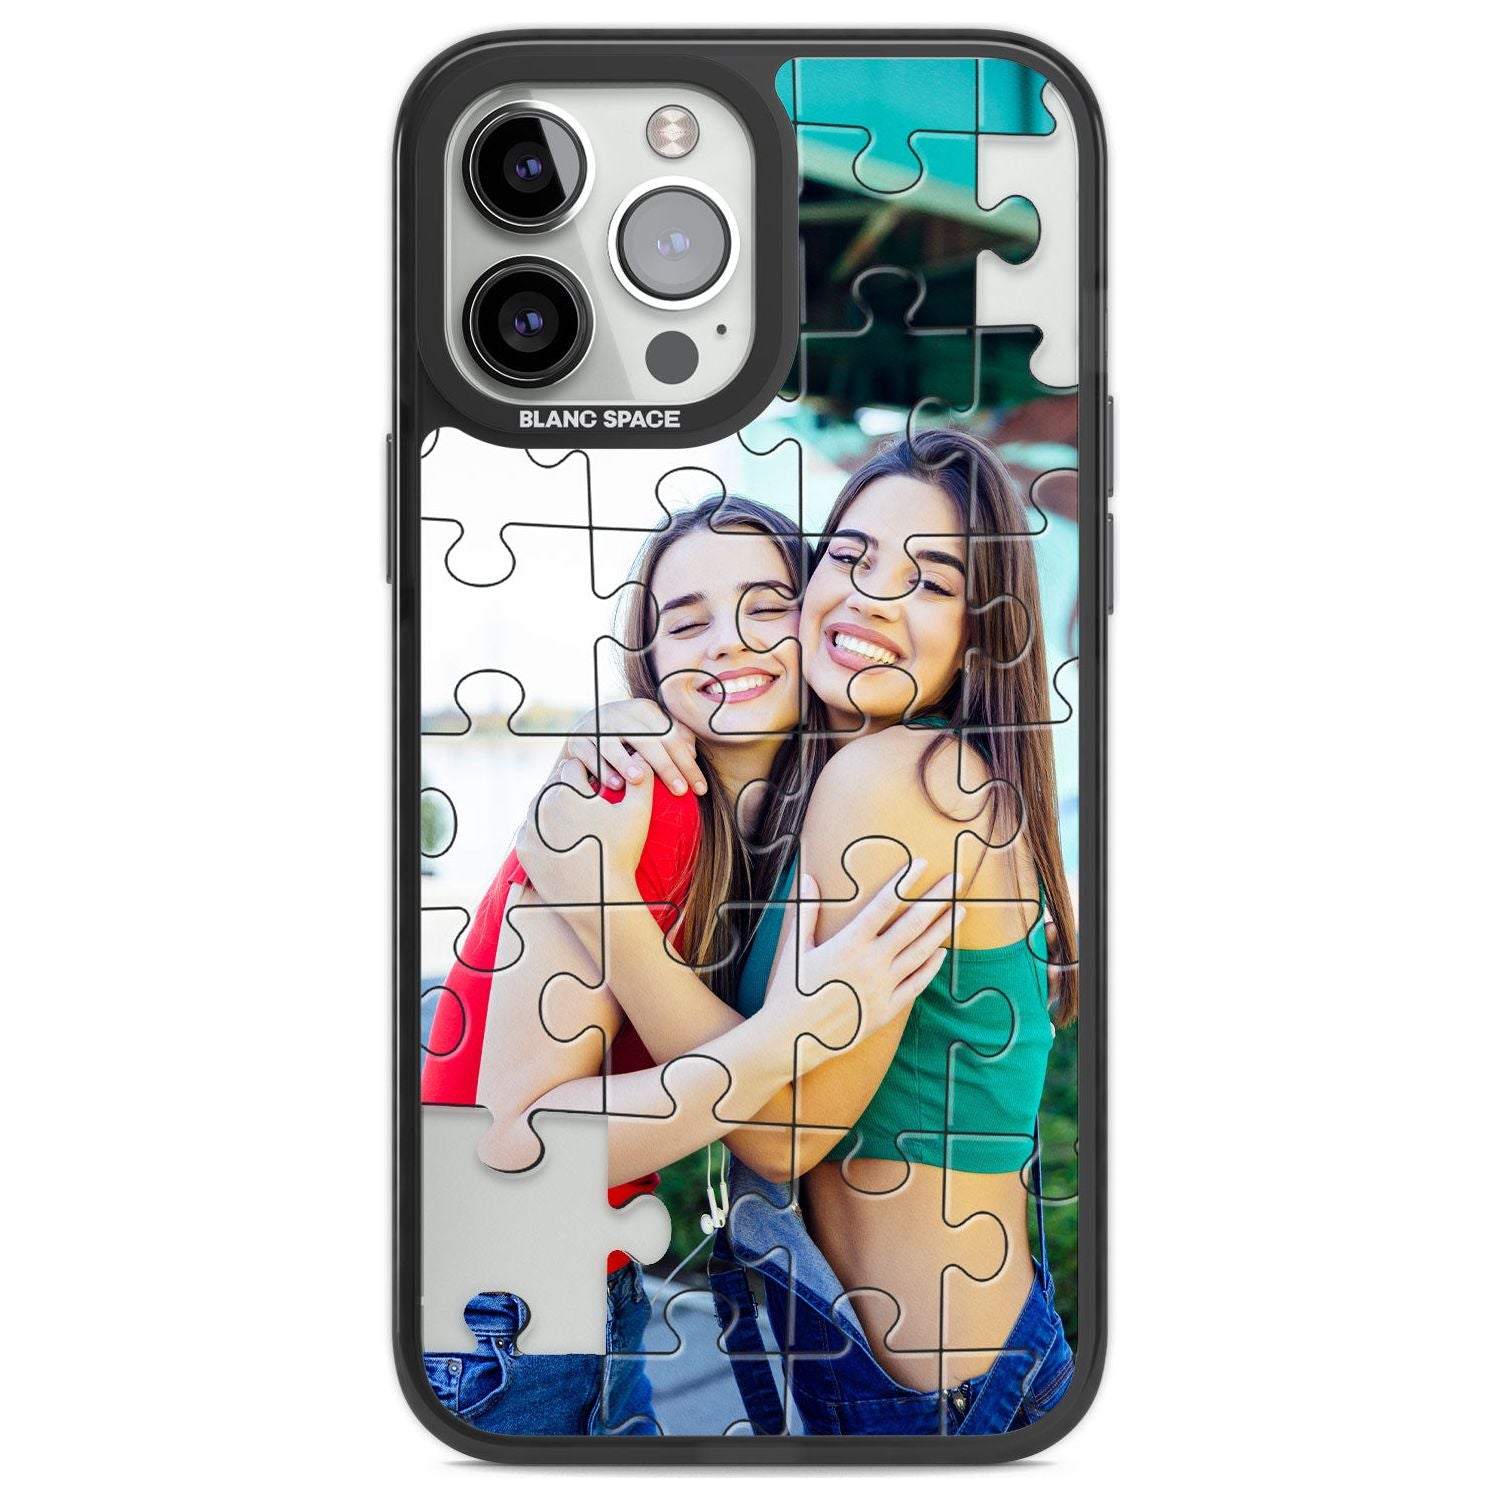 Personalised Jigsaw Puzzle Photo Custom Phone Case iPhone 13 Pro Max / Black Impact Case,iPhone 14 Pro Max / Black Impact Case Blanc Space